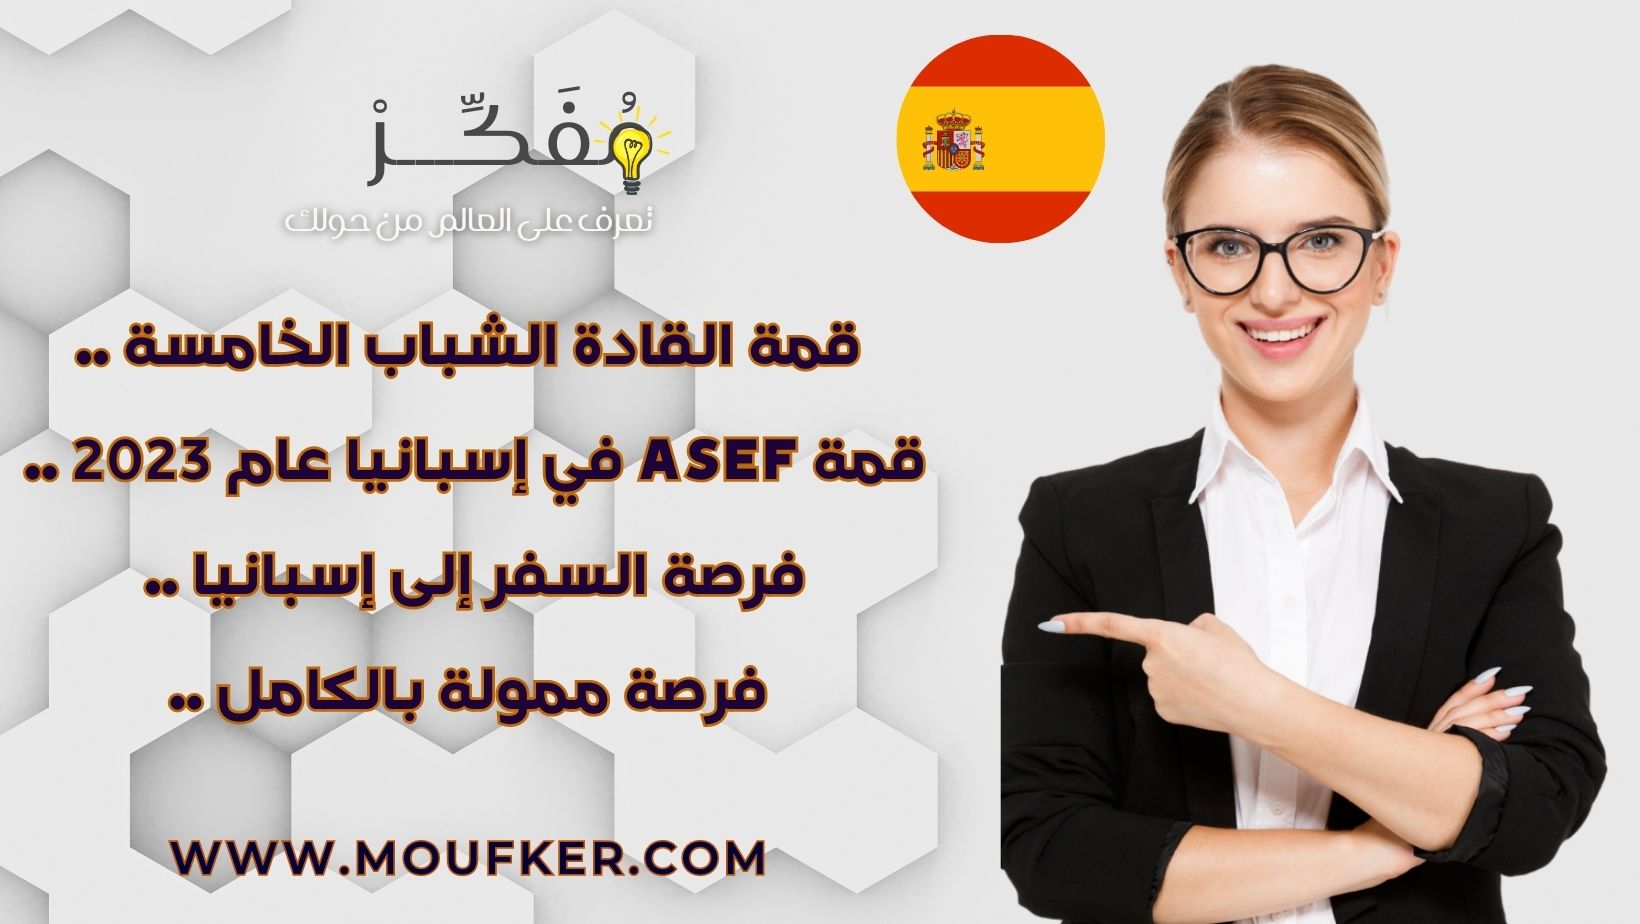 قمة القادة الشباب الخامسة .. قمة ASEF في إسبانيا عام 2023 .. فرصة السفر إلى إسبانيا .. فرصة ممولة بالكامل ..